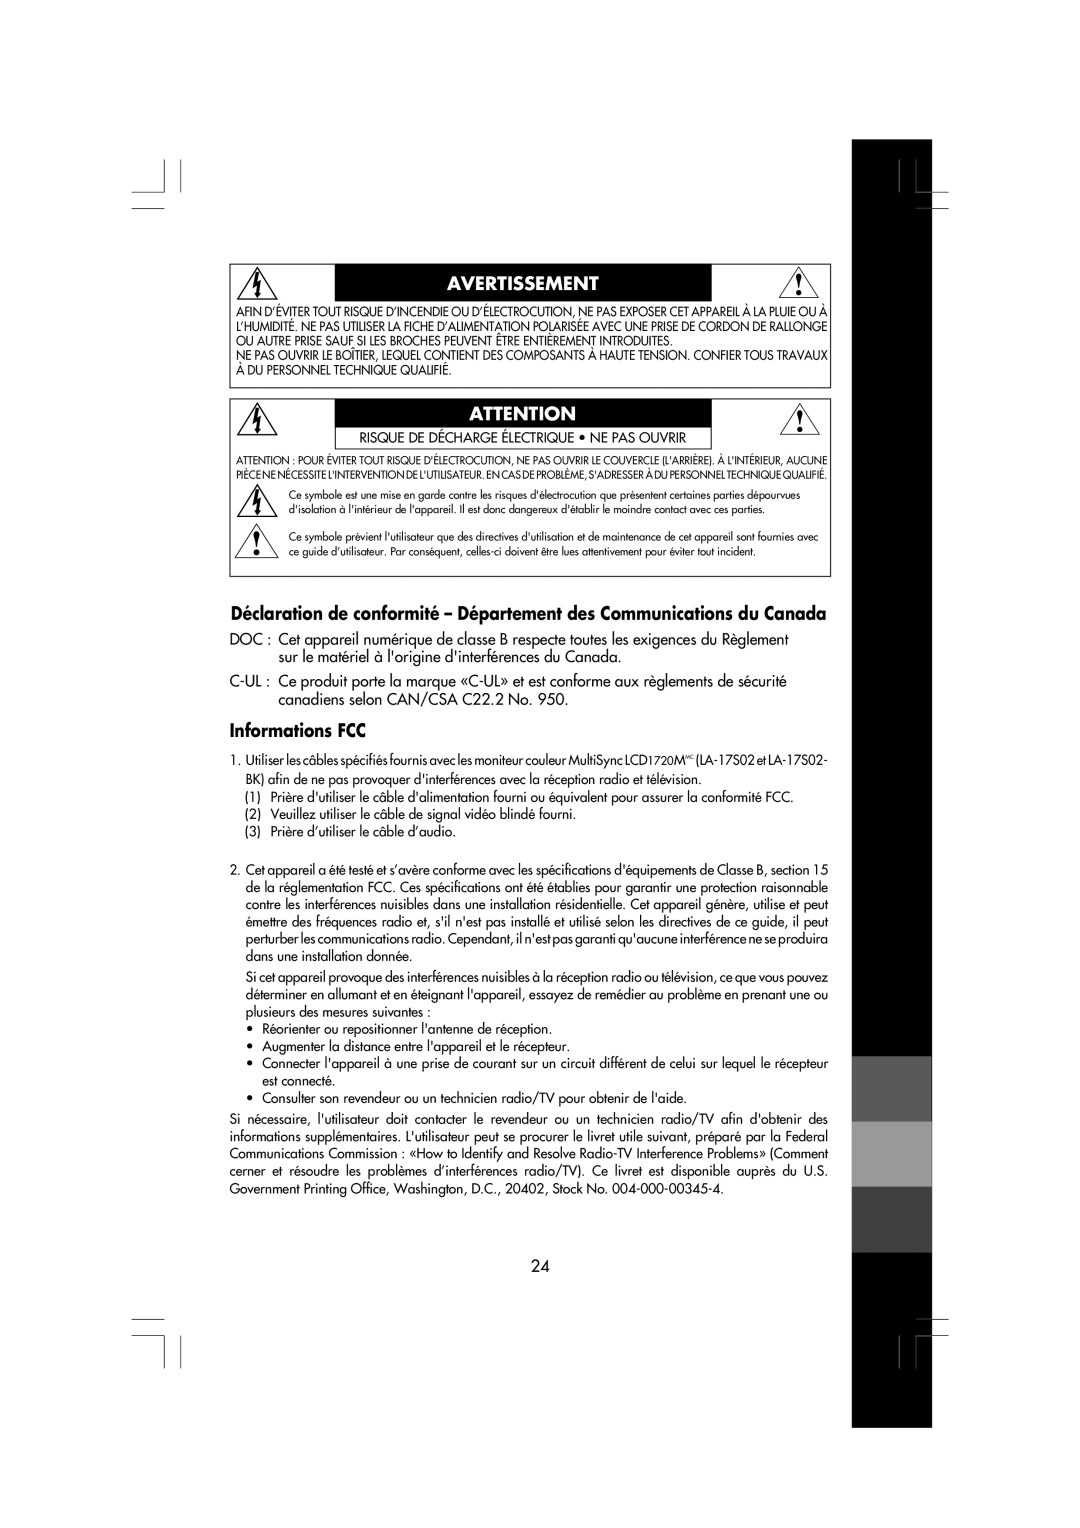 Mitsubishi Electronics LCD1720M manual Avertissement, Déclaration de conformité - Département des Communications du Canada 